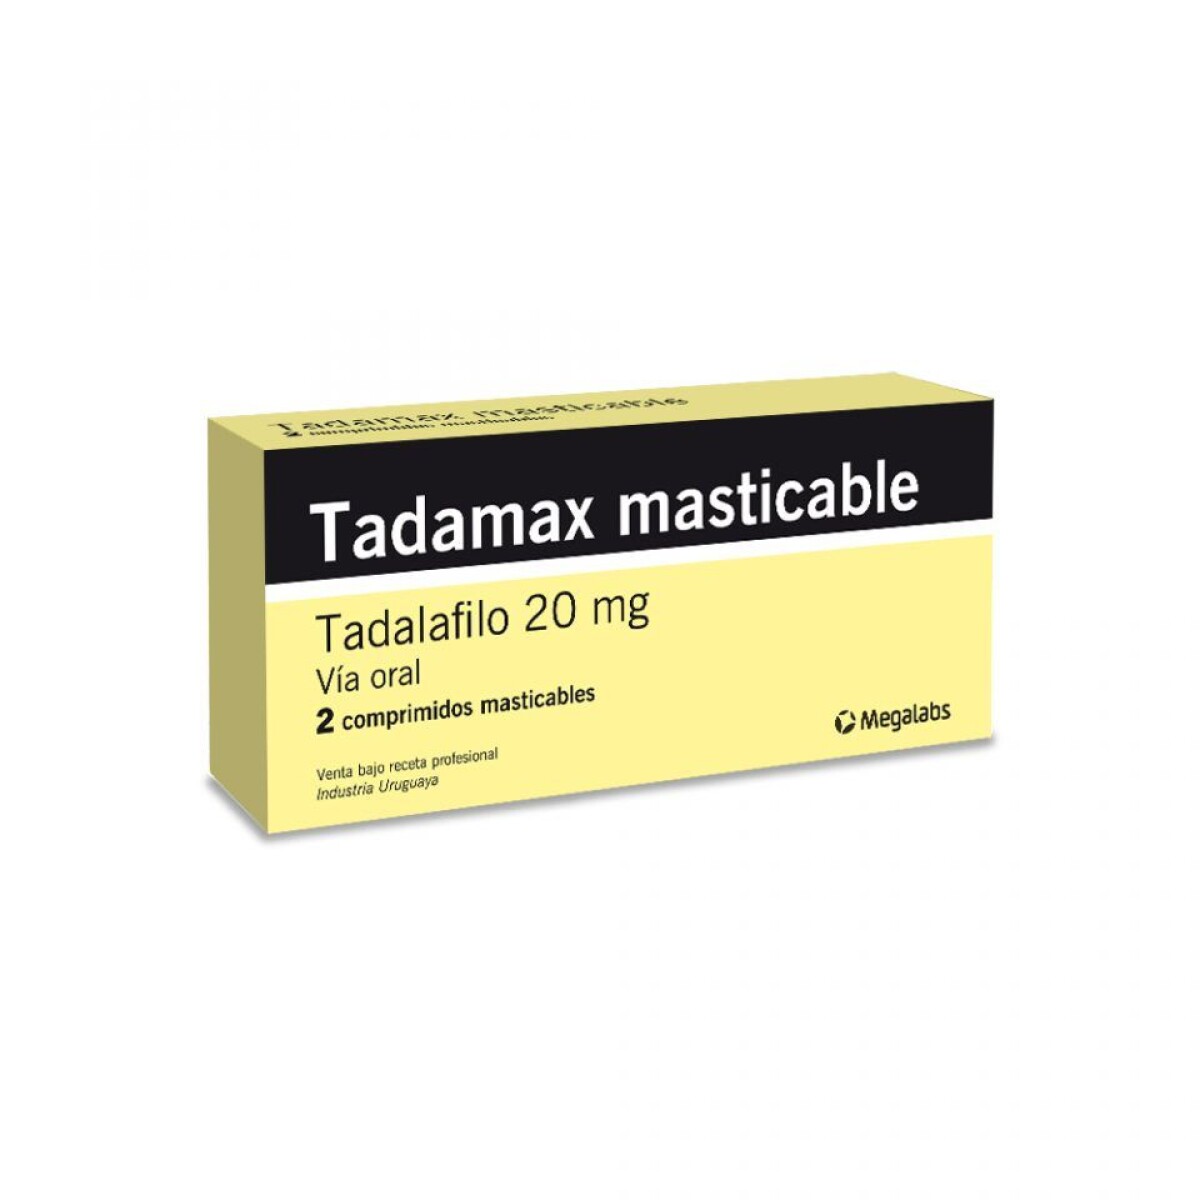 TADAMAX 20 MG 2 COMPRIMIDOS MASTICABLES 